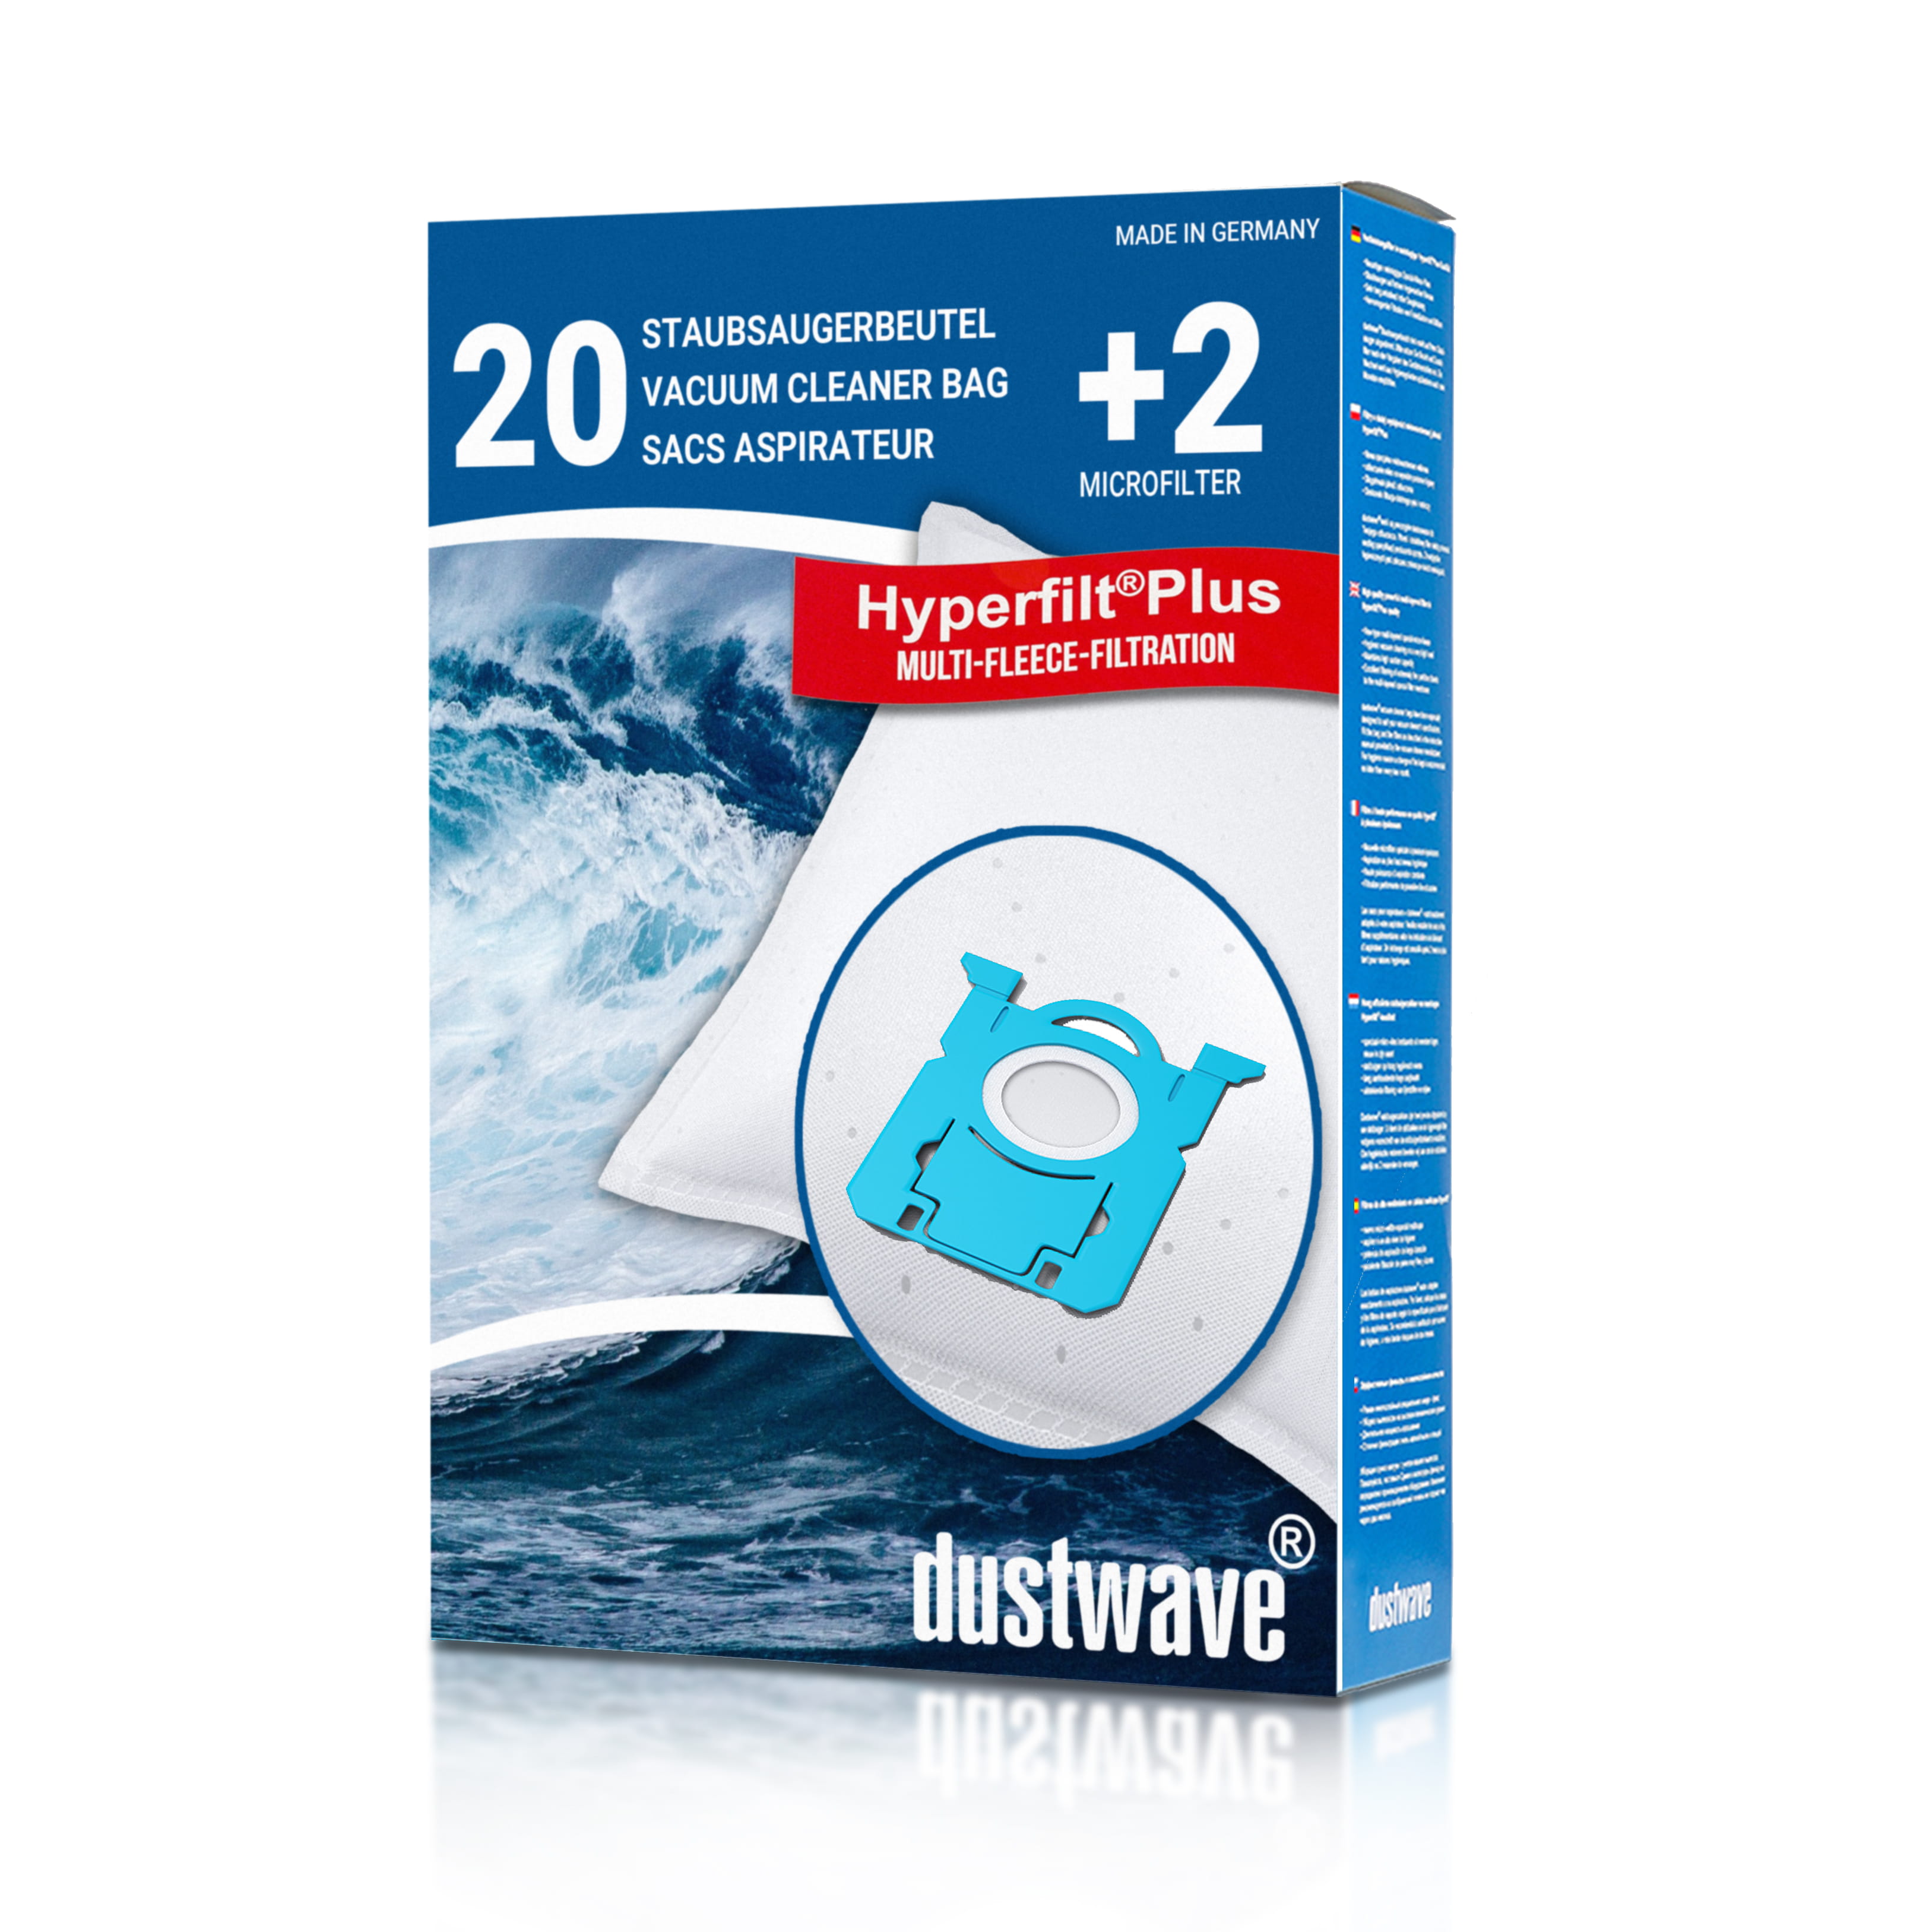 Dustwave® 20 Staubsaugerbeutel für AEG VX9-1-TM-E - hocheffizient, mehrlagiges Mikrovlies mit Hygieneverschluss - Made in Germany